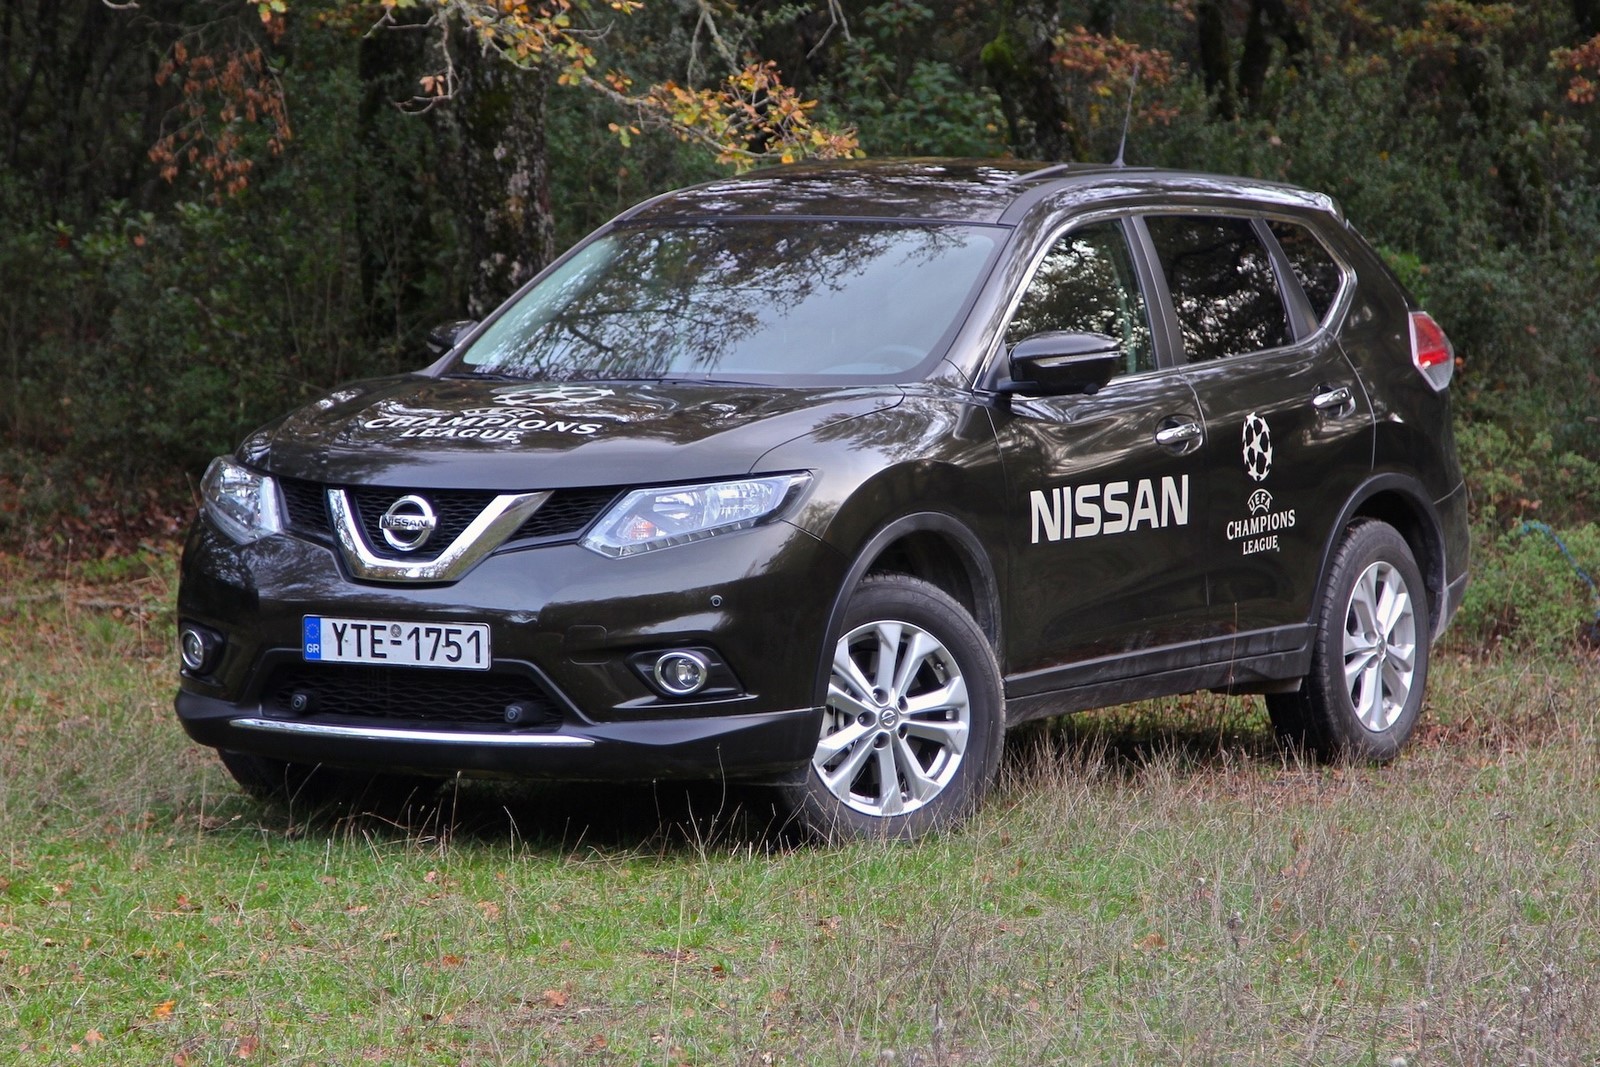 Nissan x-trail test drive #8